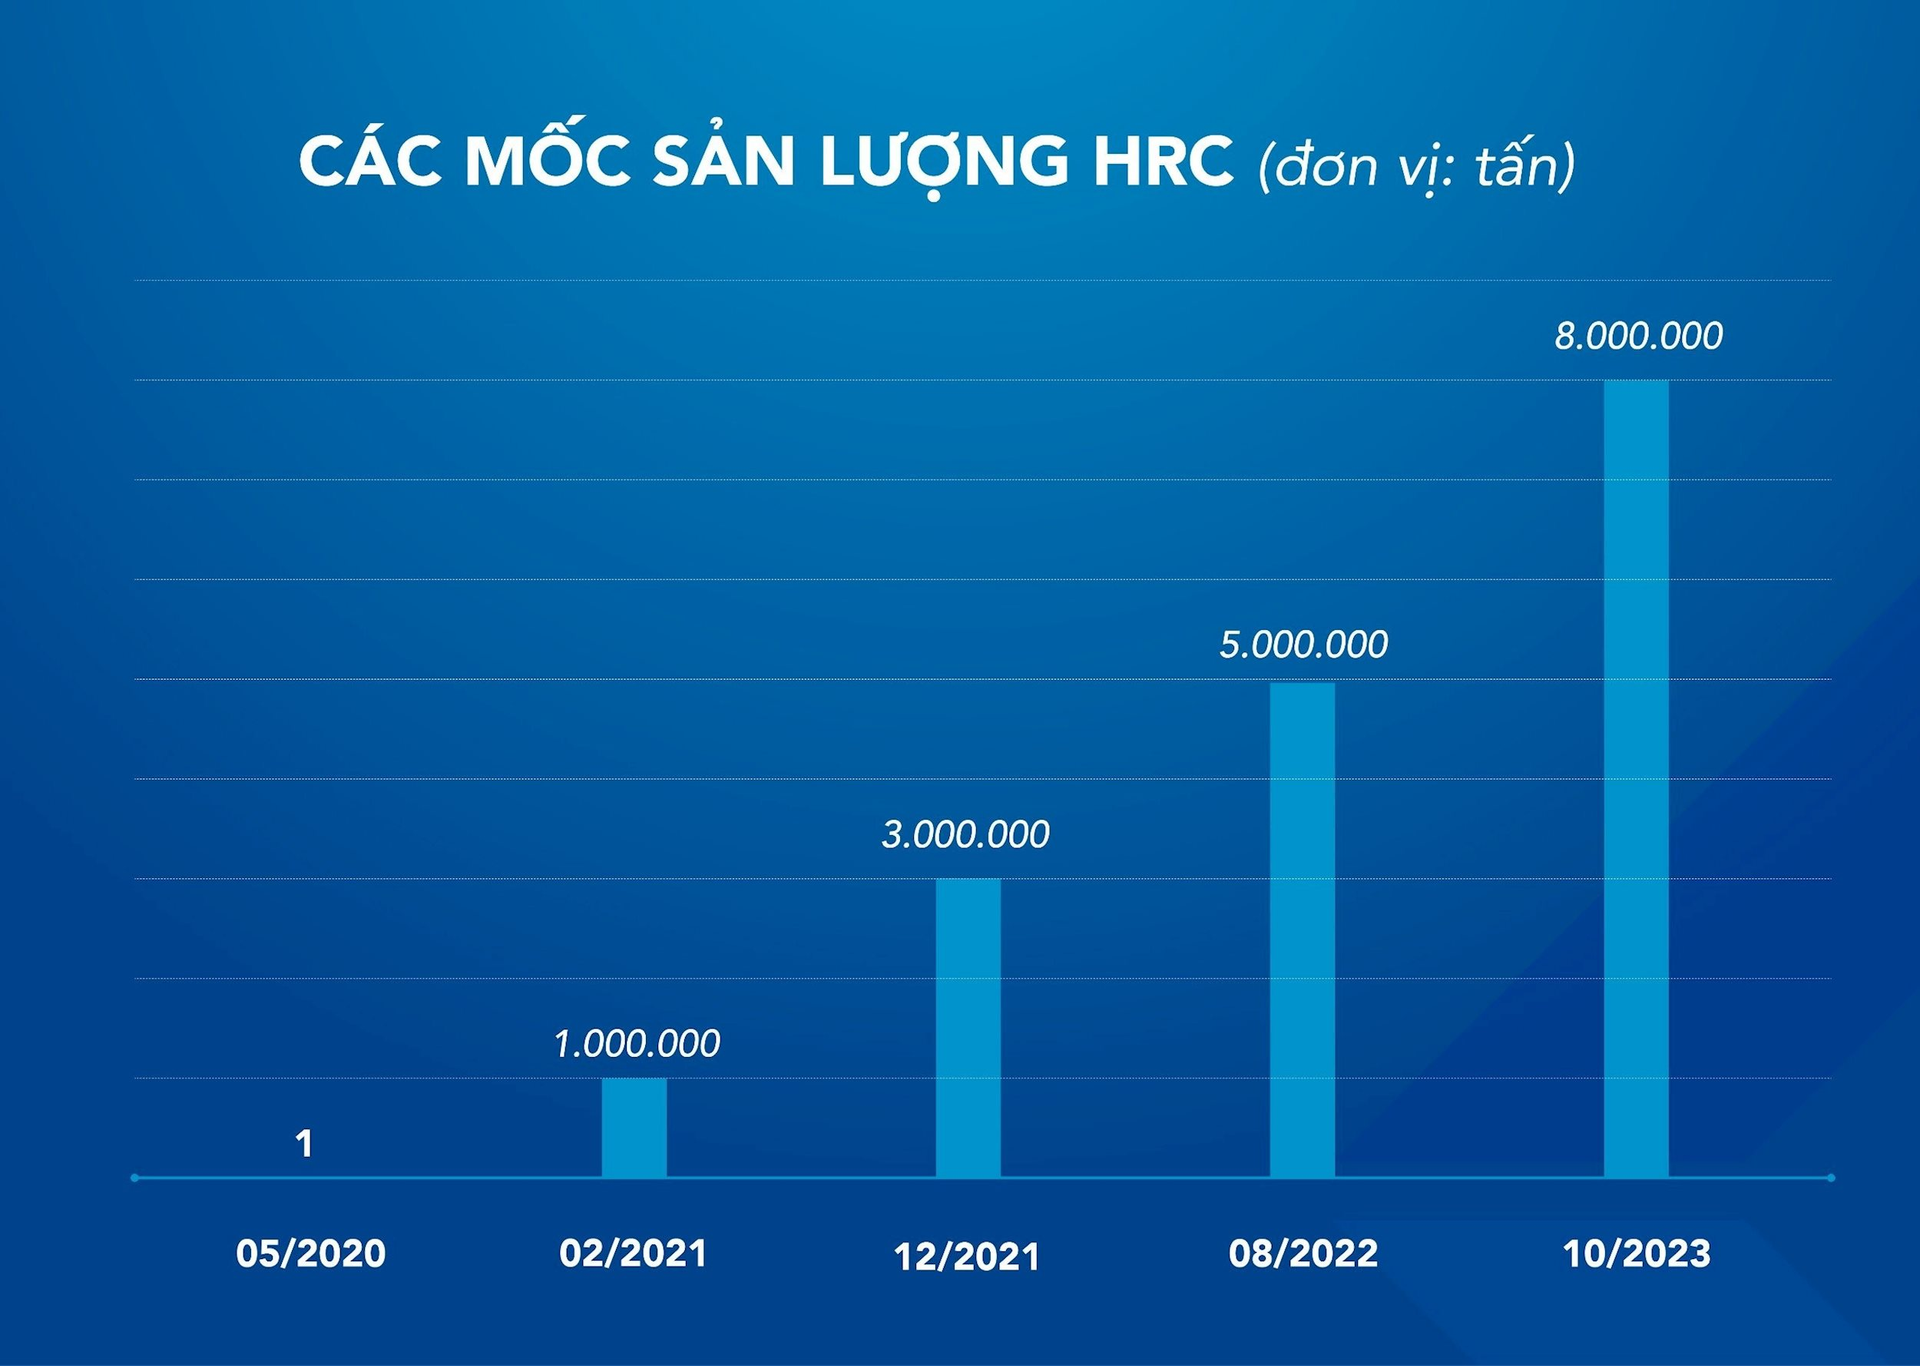 Hòa Phát chính thức cán mốc 8 triệu tấn thép cán nóng (HRC) sau hơn 3 năm sản xuất - Ảnh 1.